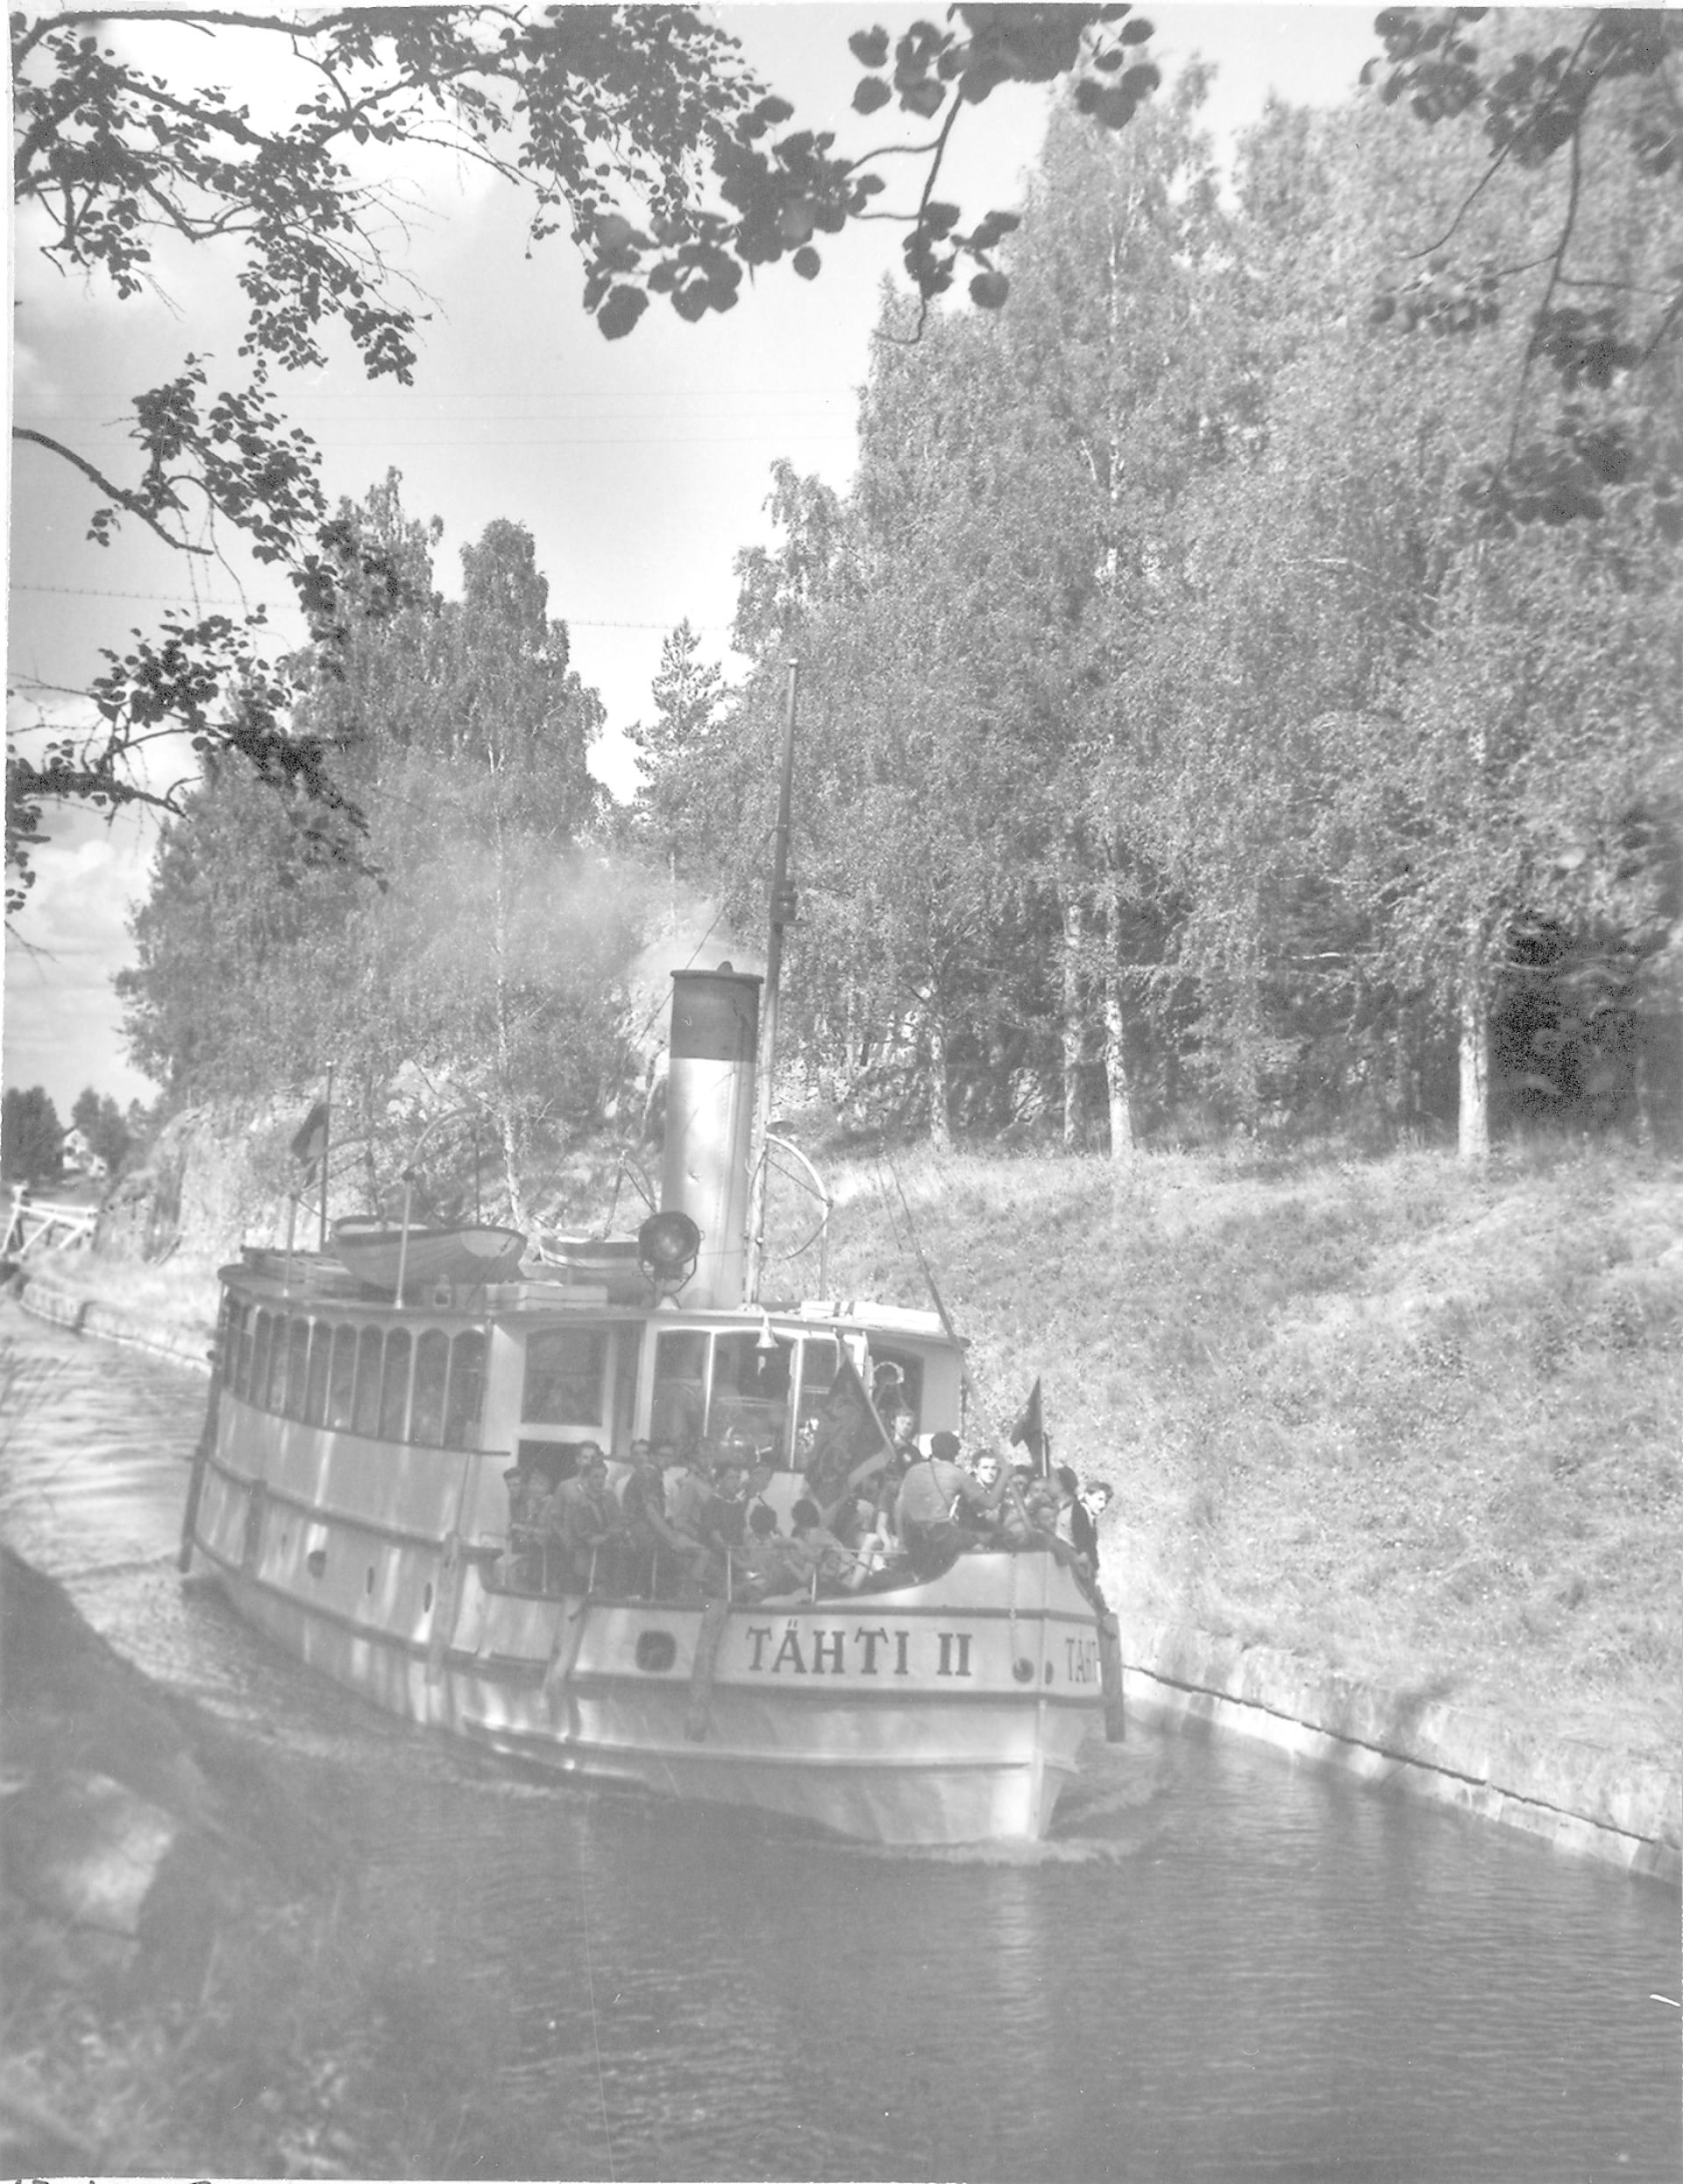 Höyrylaiva Tähti II kuljettaa matkustajia Varkaantaipaleen kanavassa Ristiinassa vuonna 1958.